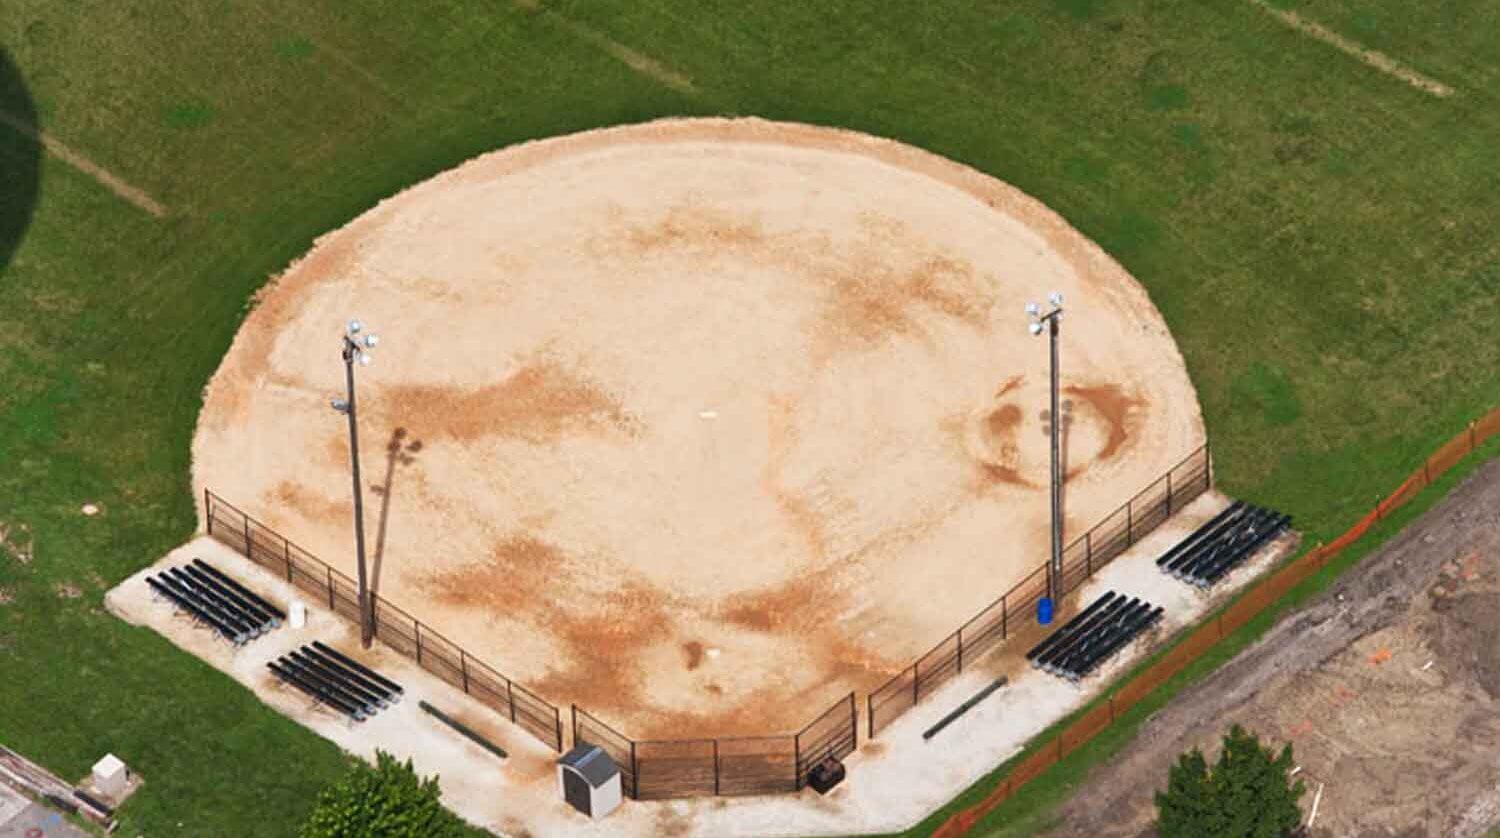 Gordon Park – LaGrange Park District baseball field